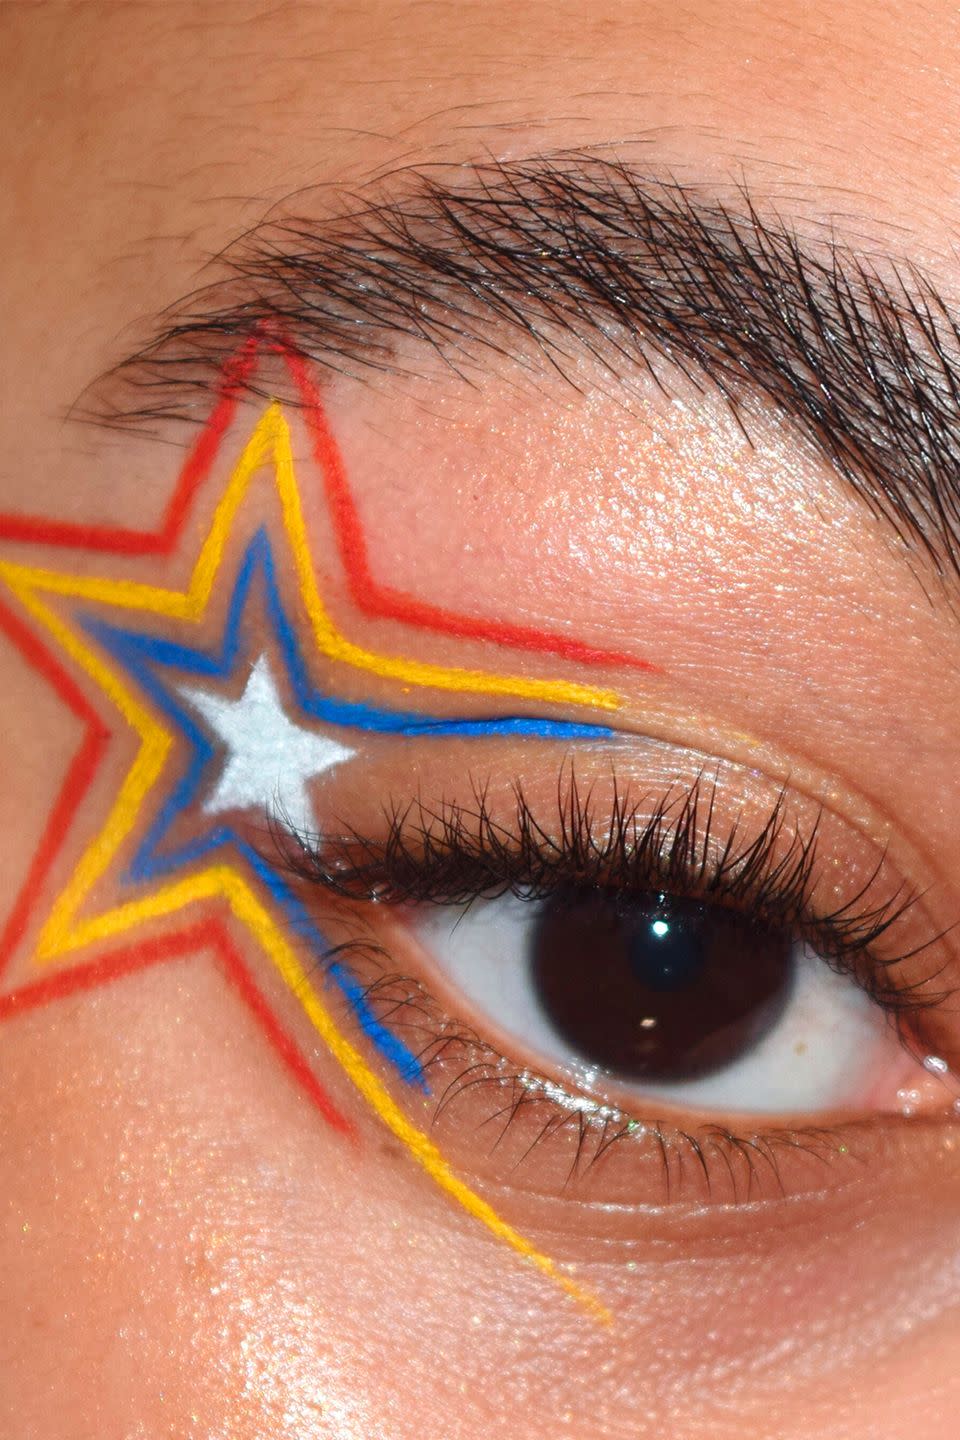 4) This Star-Themed Eye Art